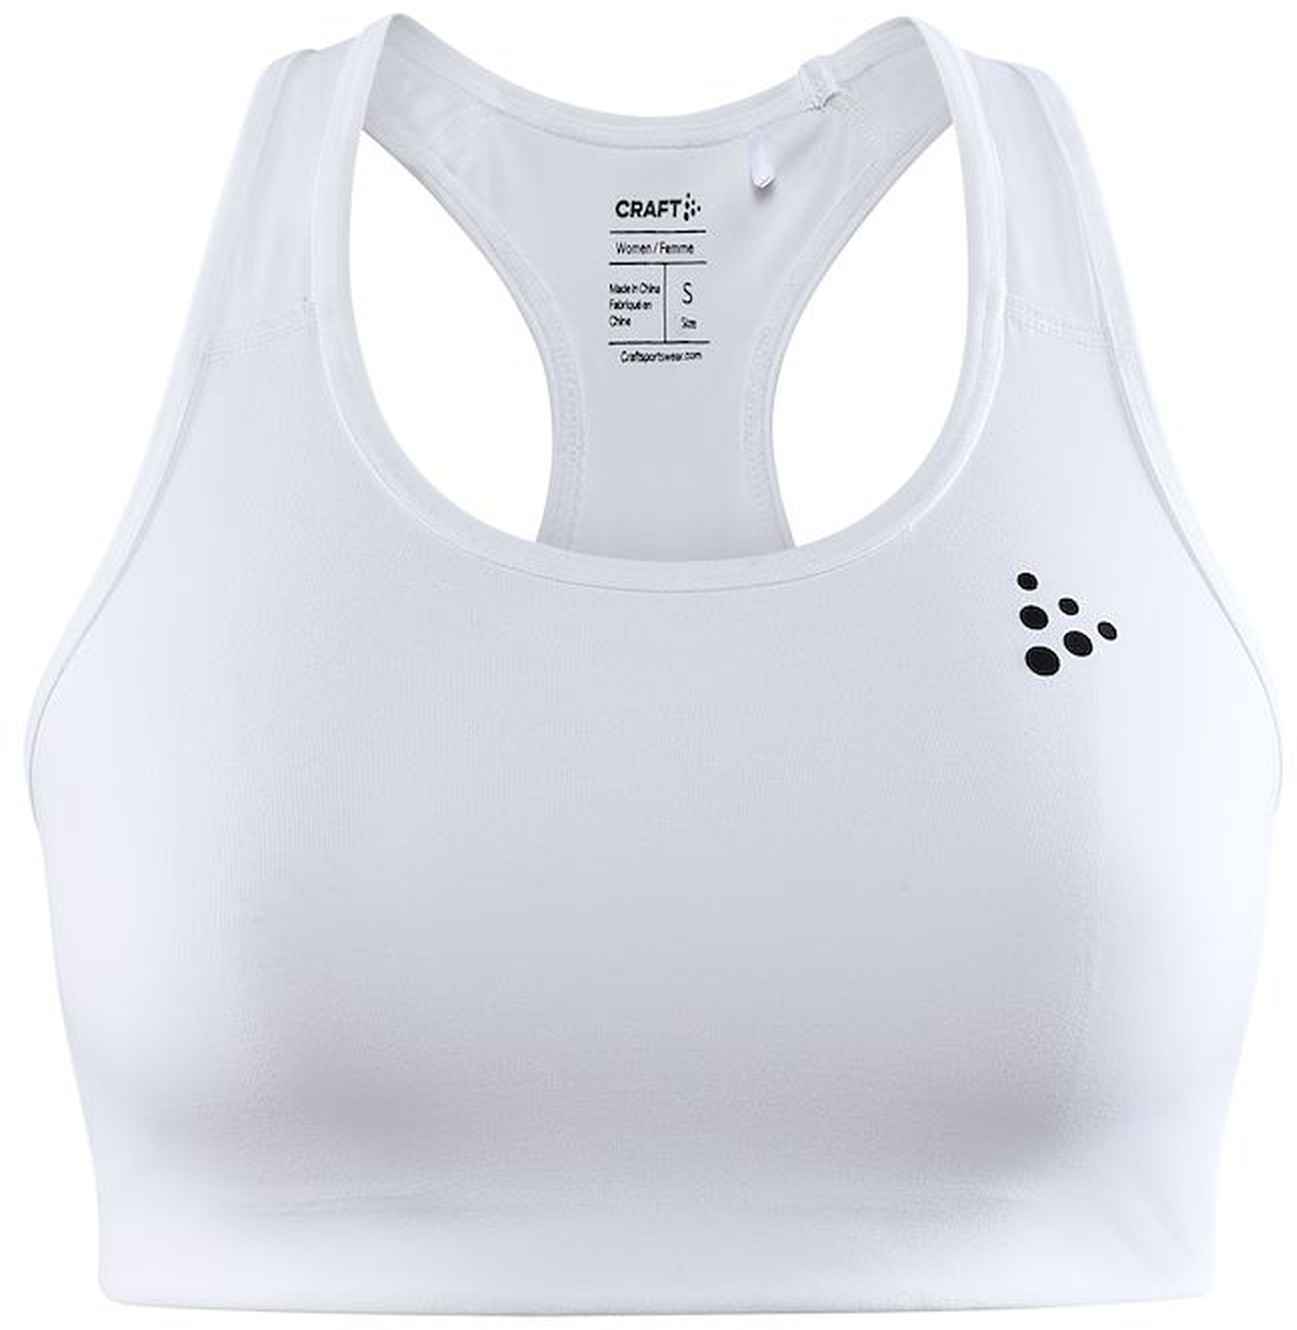 Women's functional sports bra